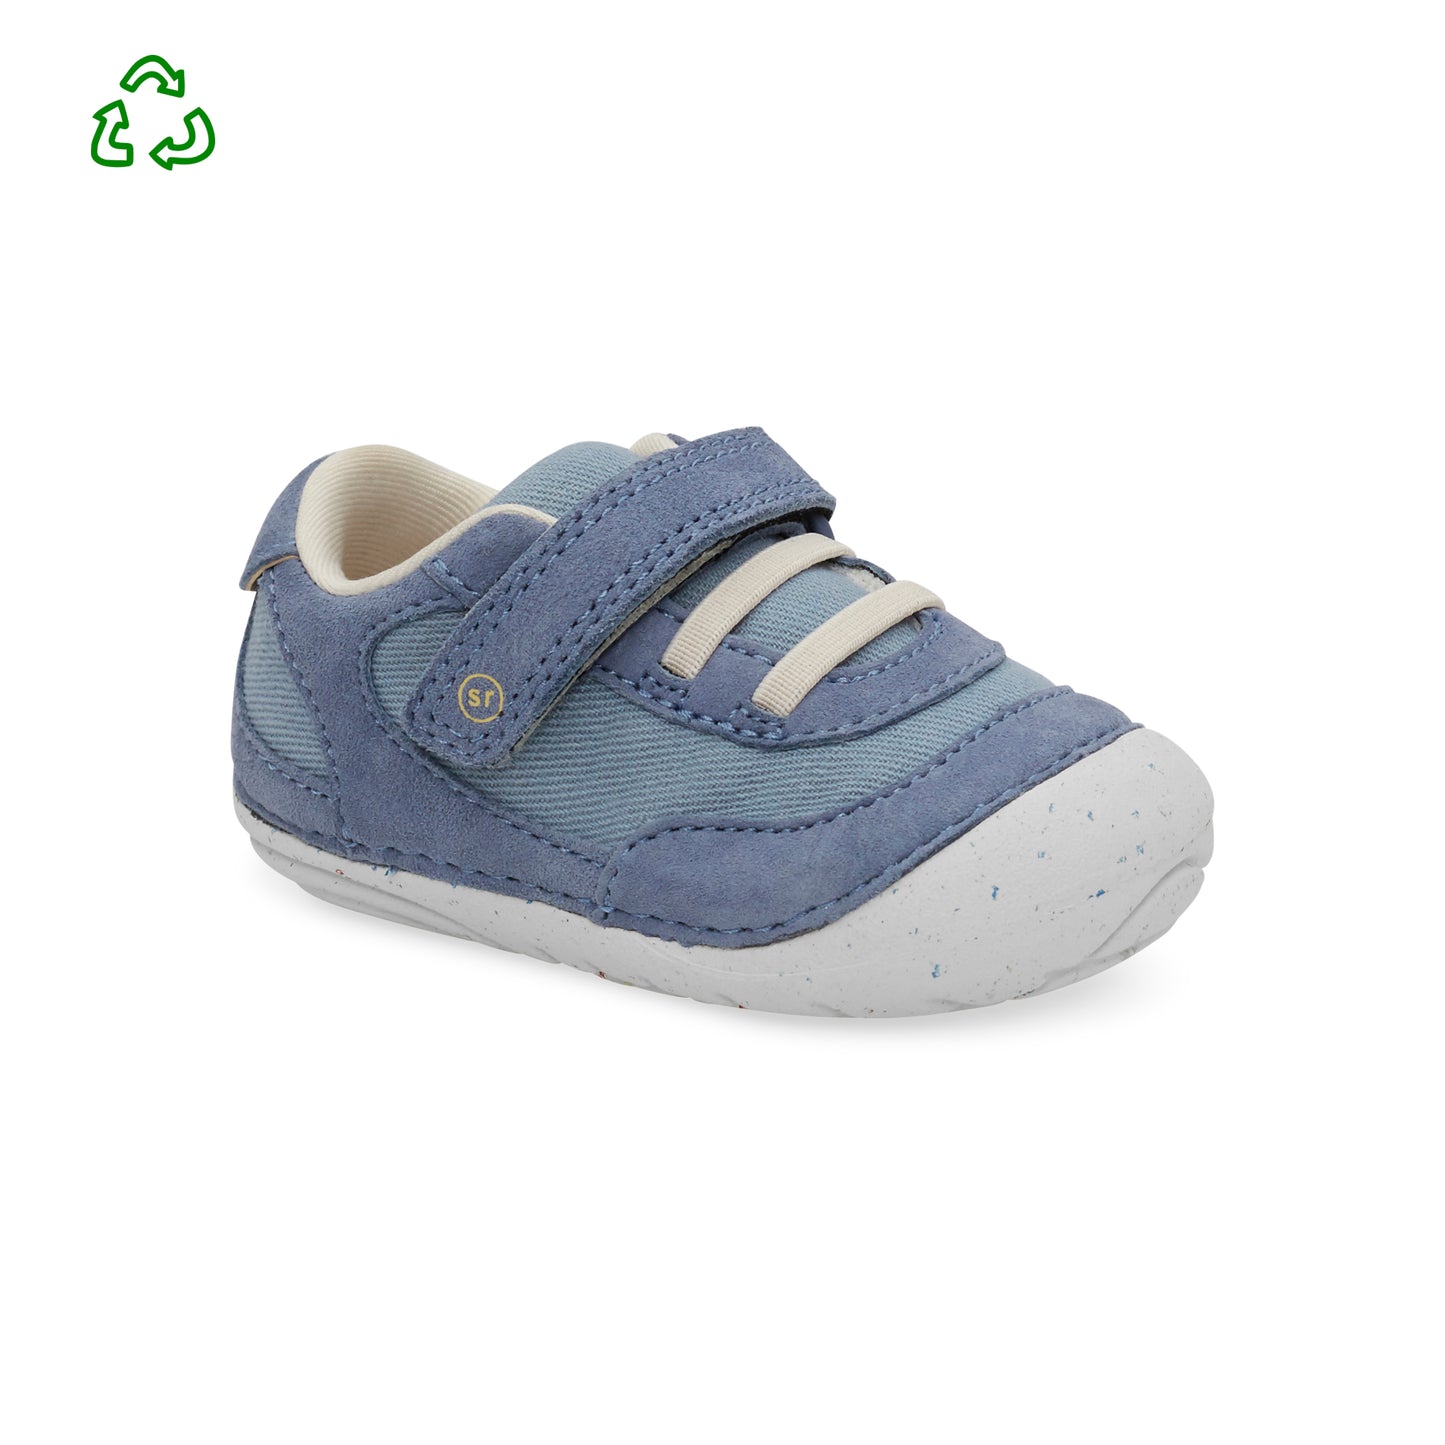 soft-motion-sprout-sneaker-littlekid-blue__Blue_1